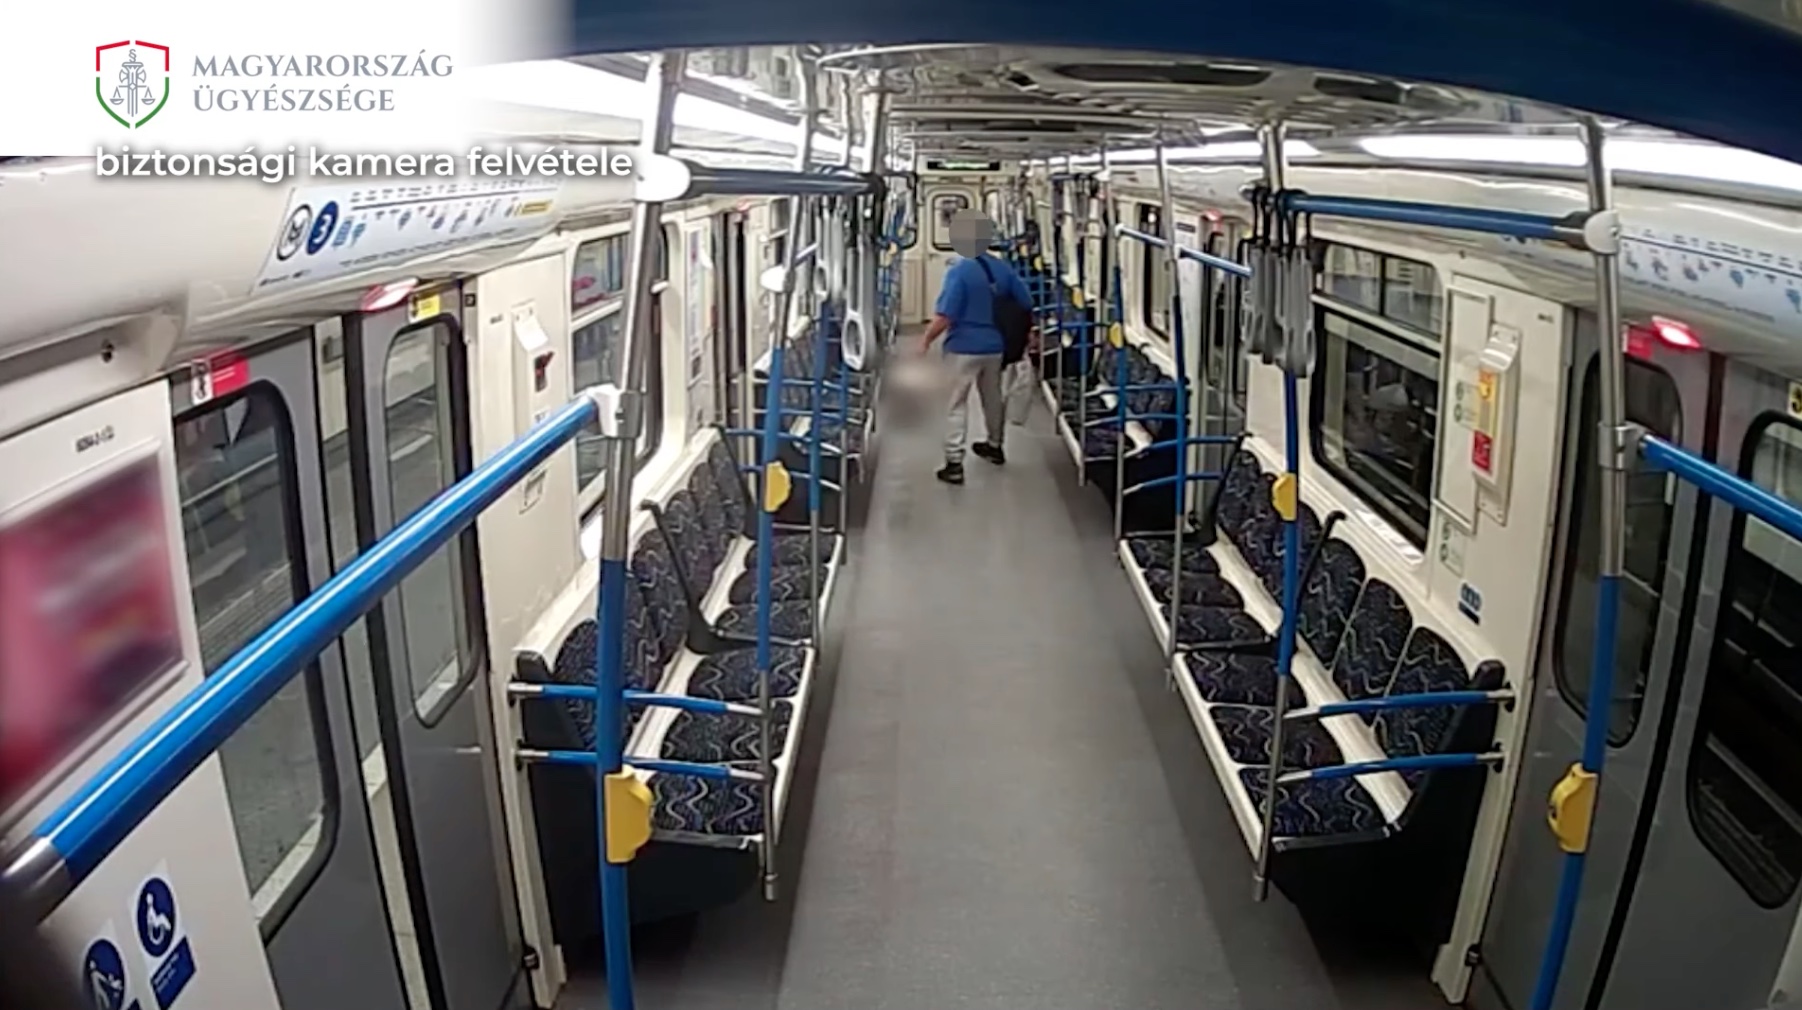 Megzavarta a köznyugalmat a metróban hagyott bakanccsal, az ügyészség szerint bűncselekményt követett el